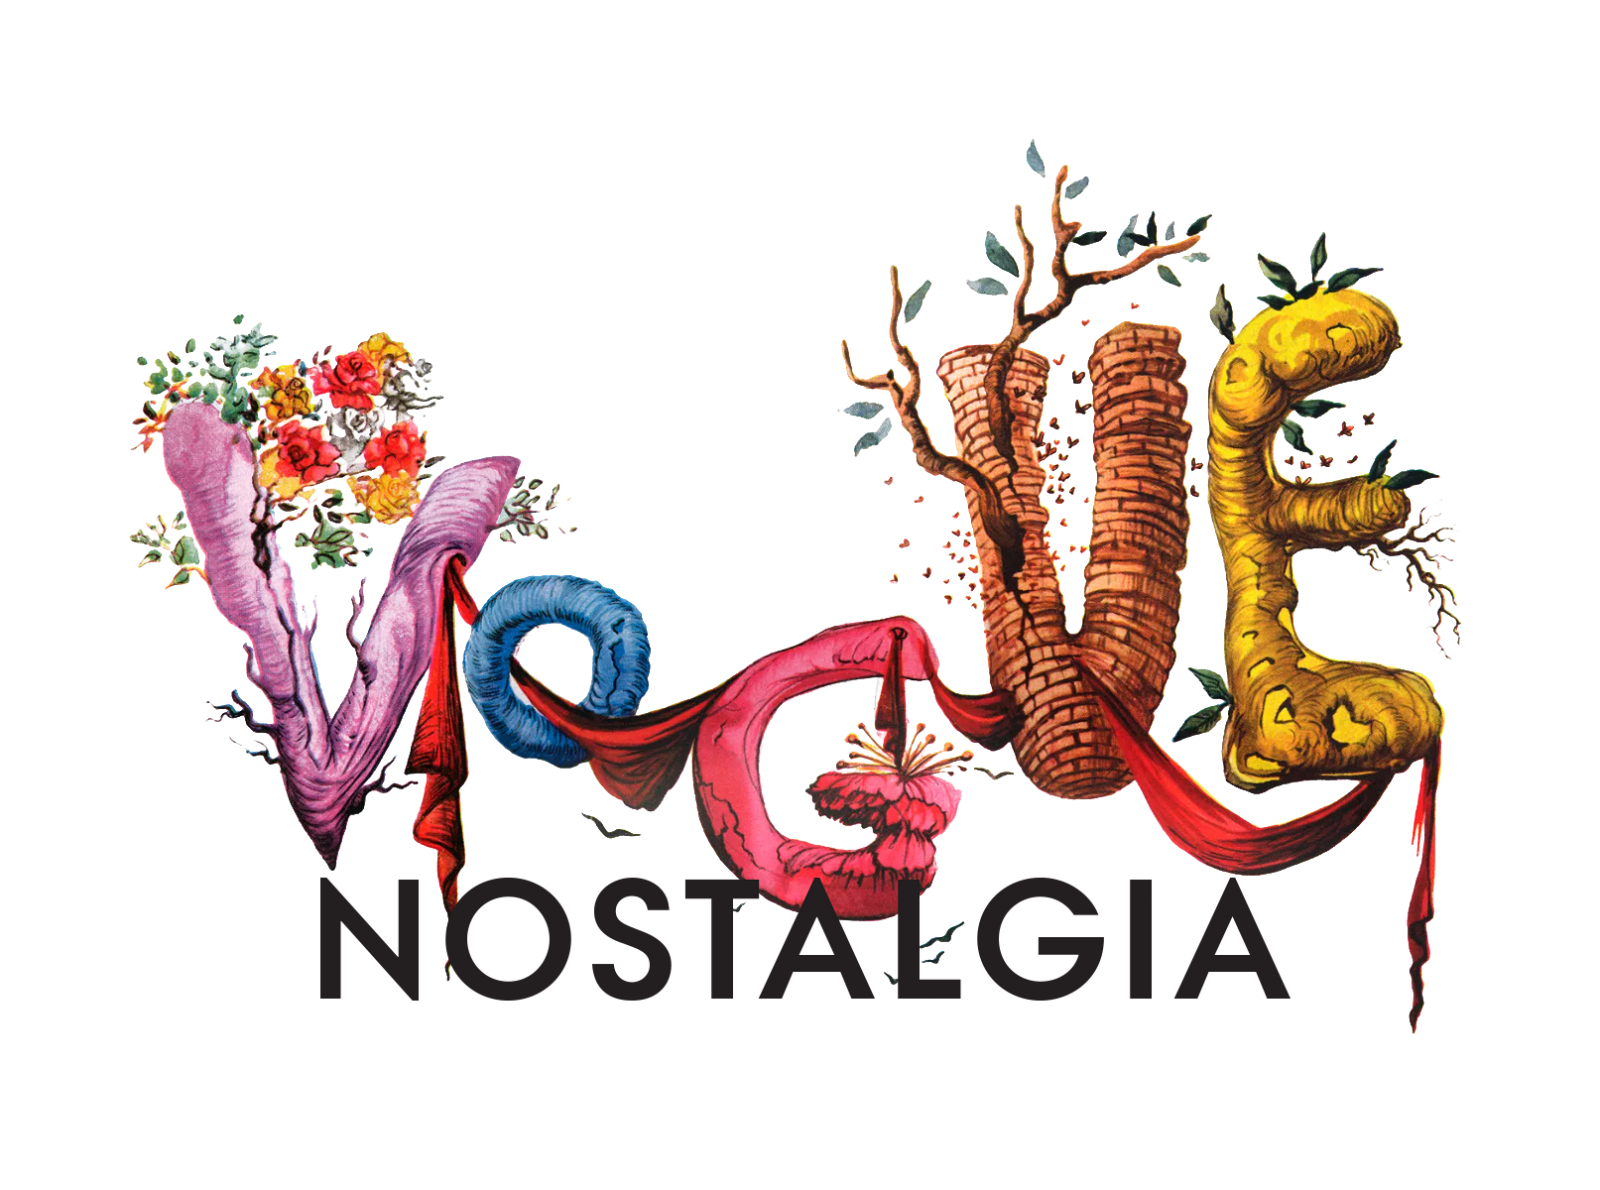 Vogue Nostalgia logo